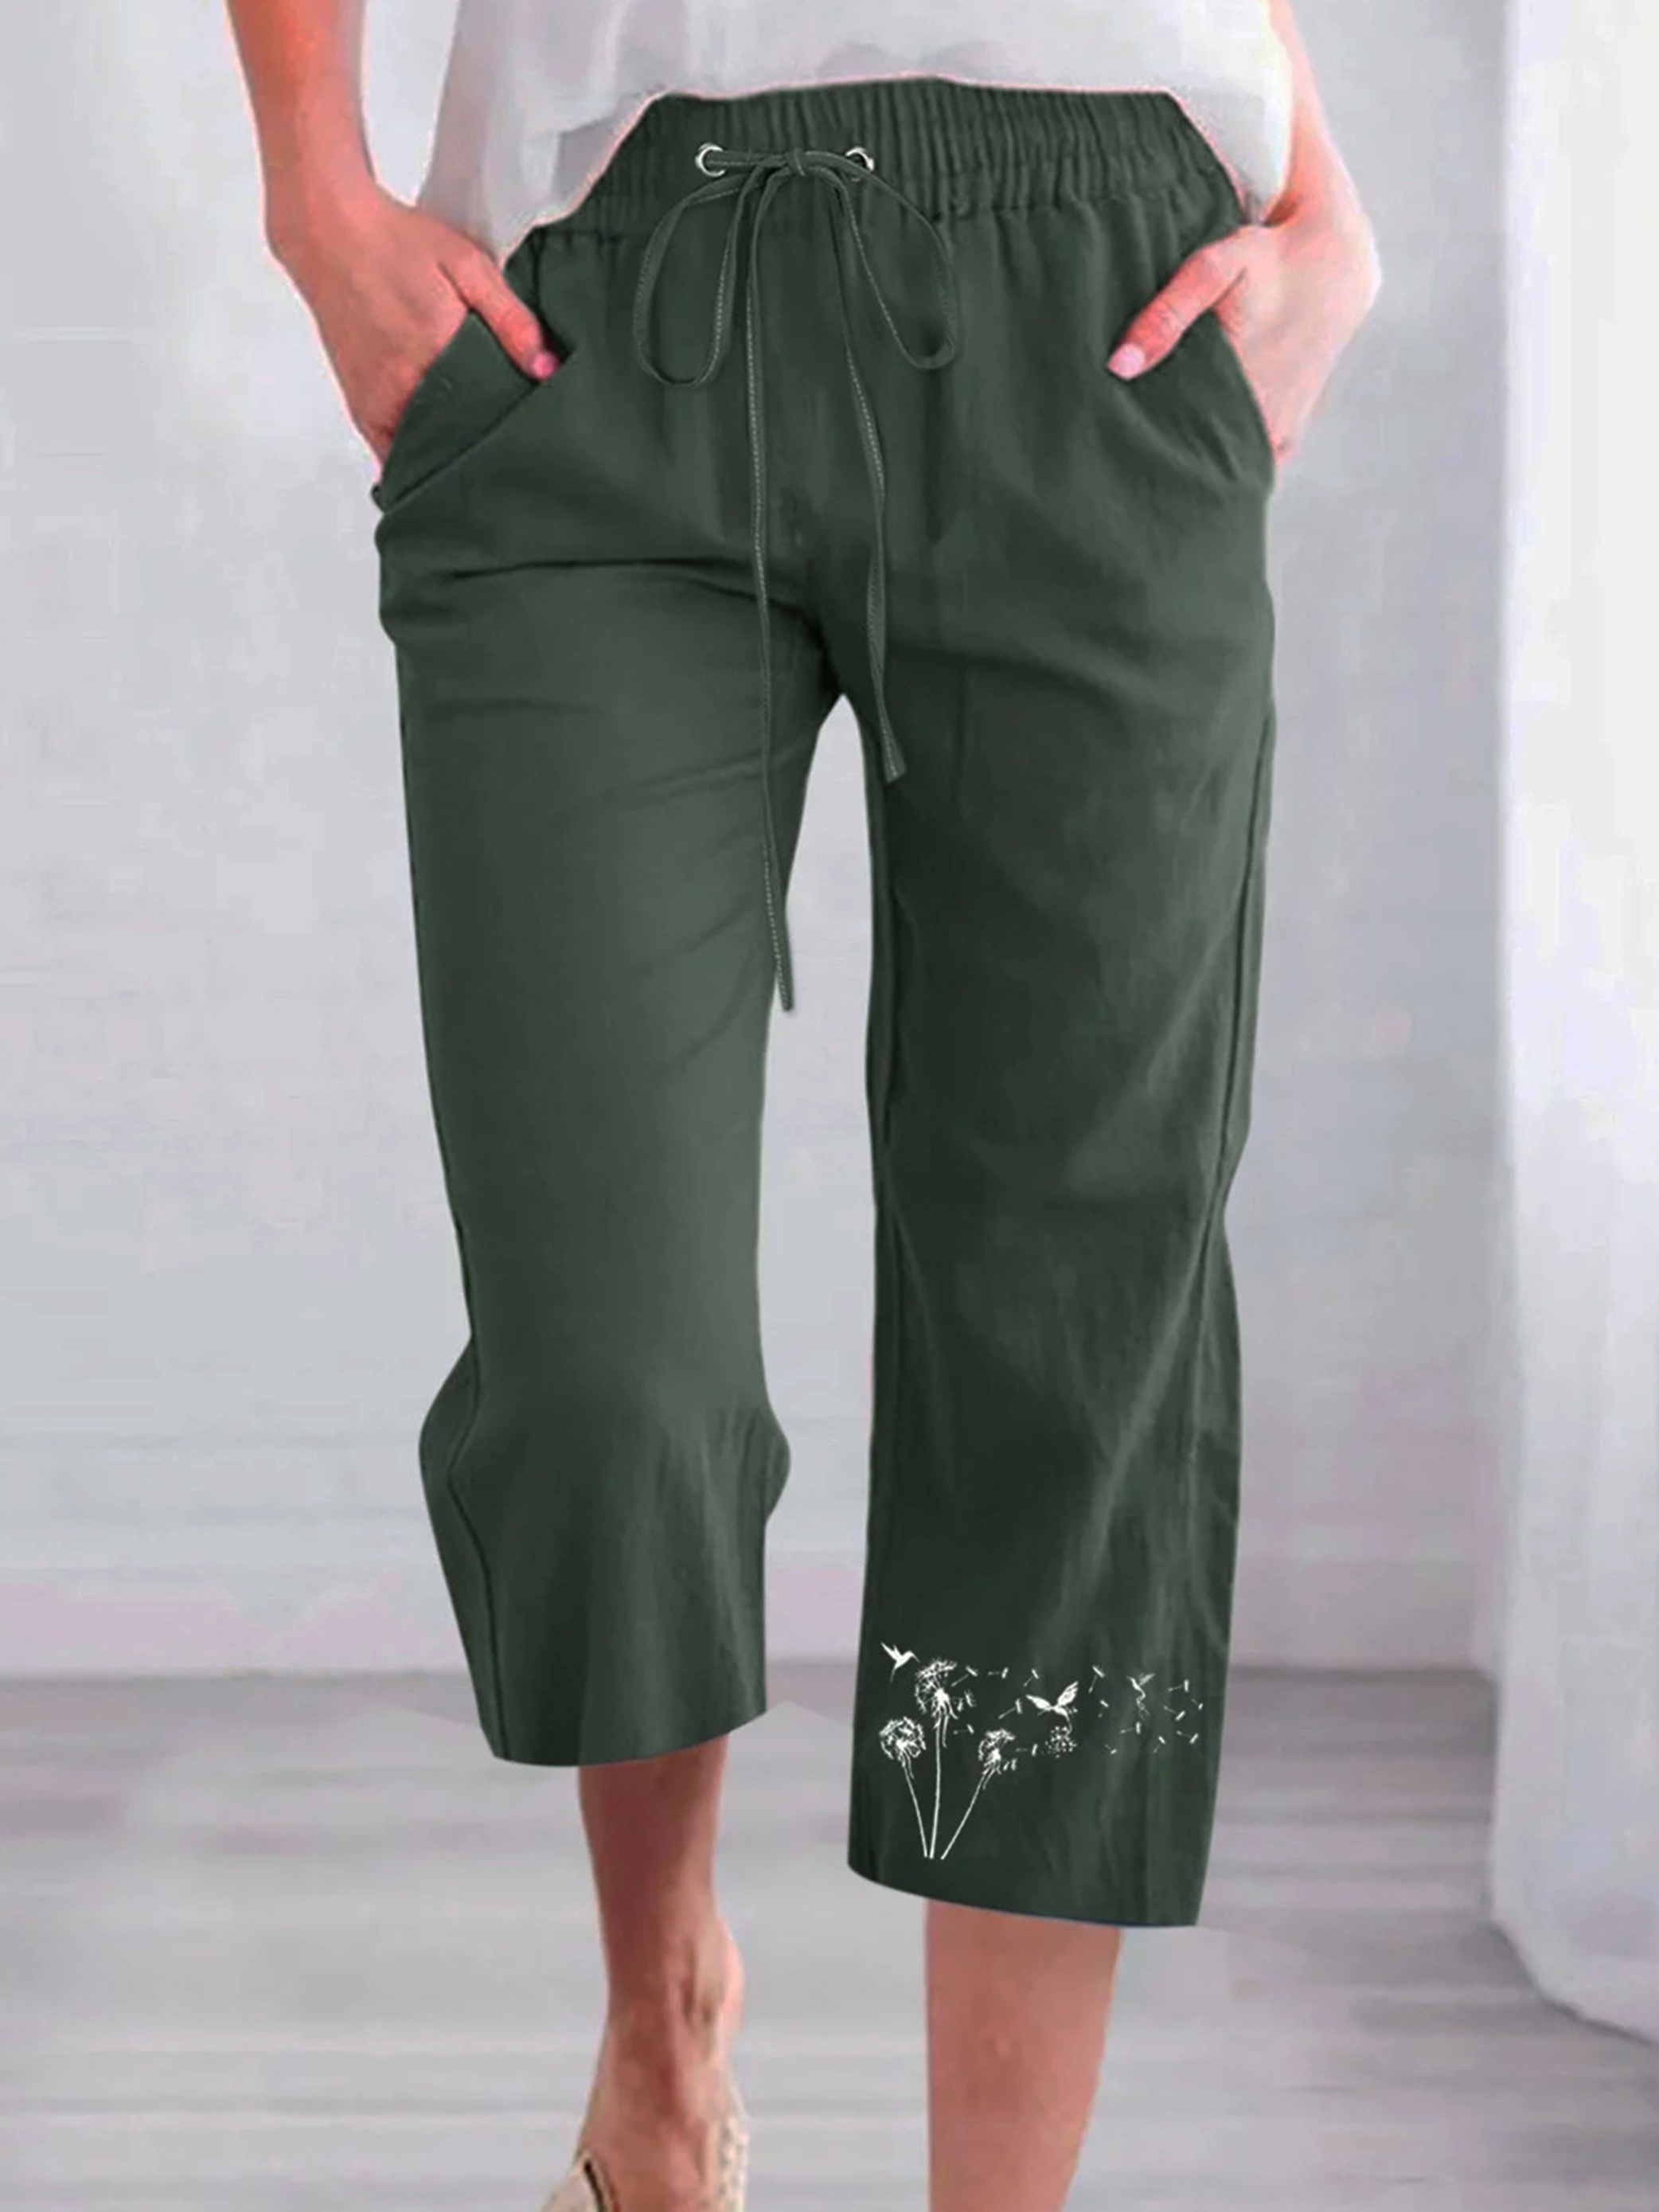 Sczwkhg Peasant Pants for Women Summer Beach Cotton Linen Capris 3